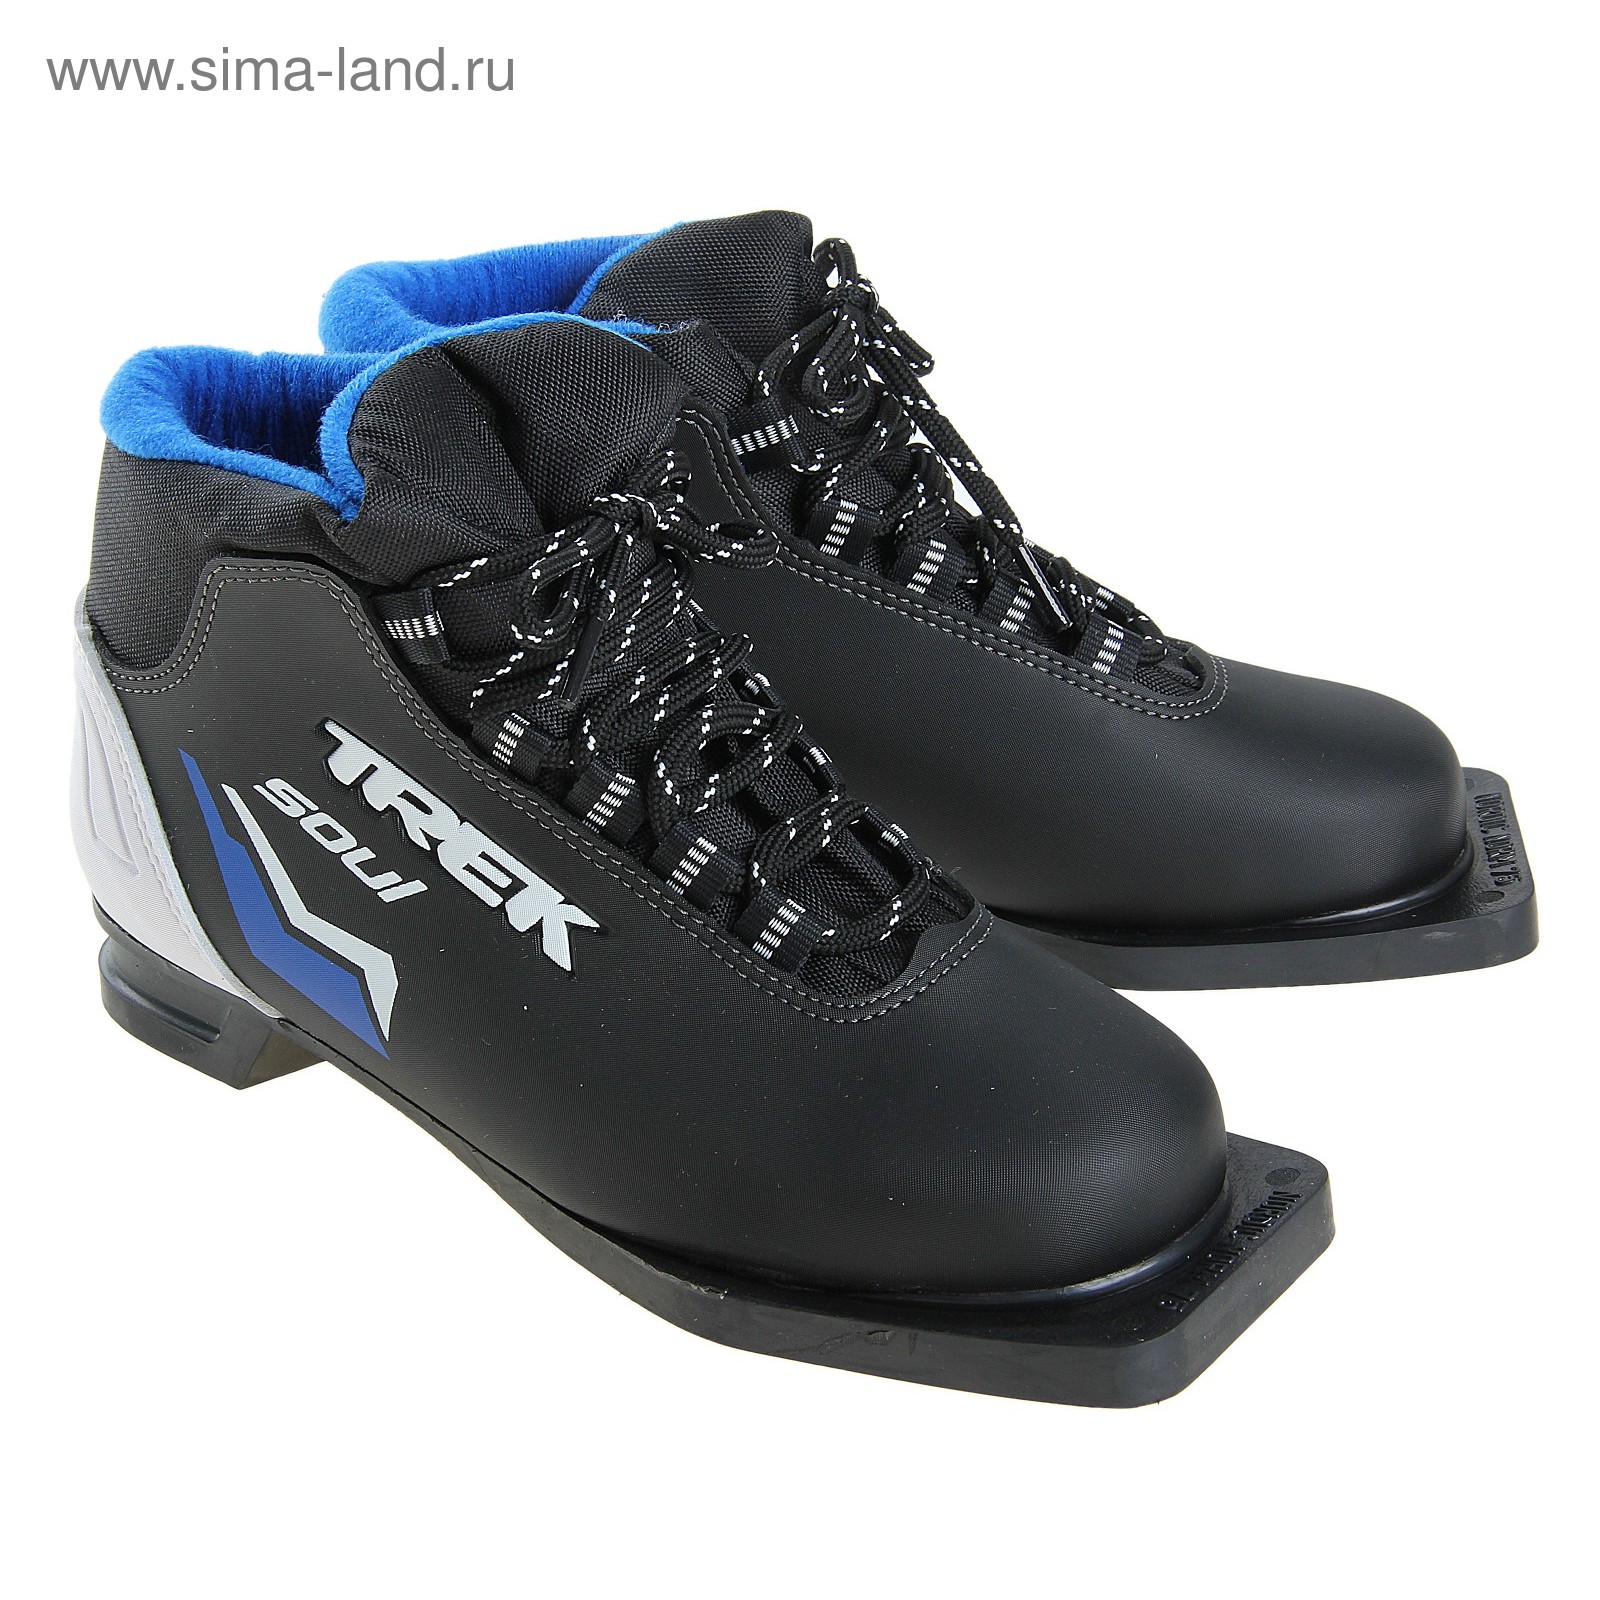 Ботинки лыжные TREK Soul NN 75 ИК (черный, лого синий) (р. 35)